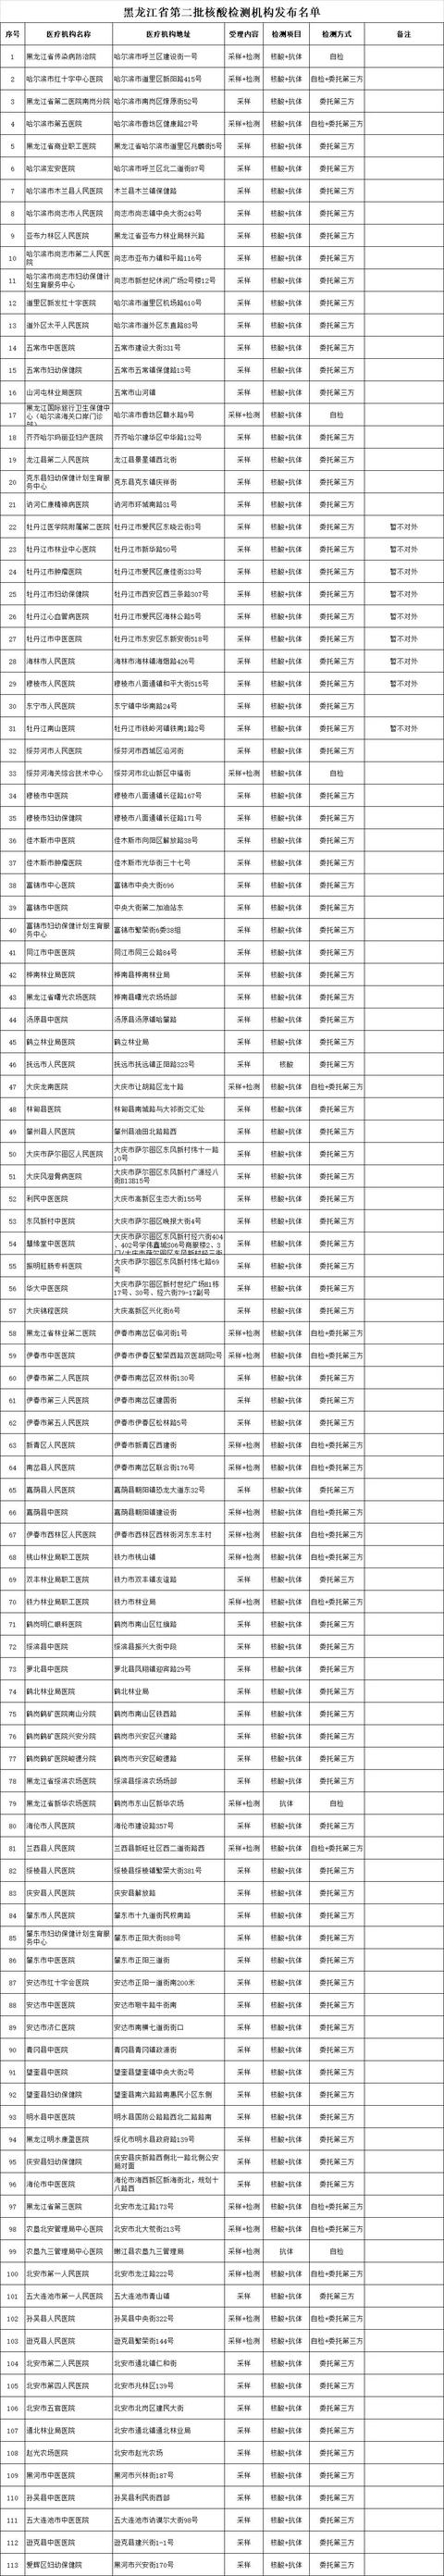 黑龍江省公佈第二批113家核酸採樣及檢測機構名單